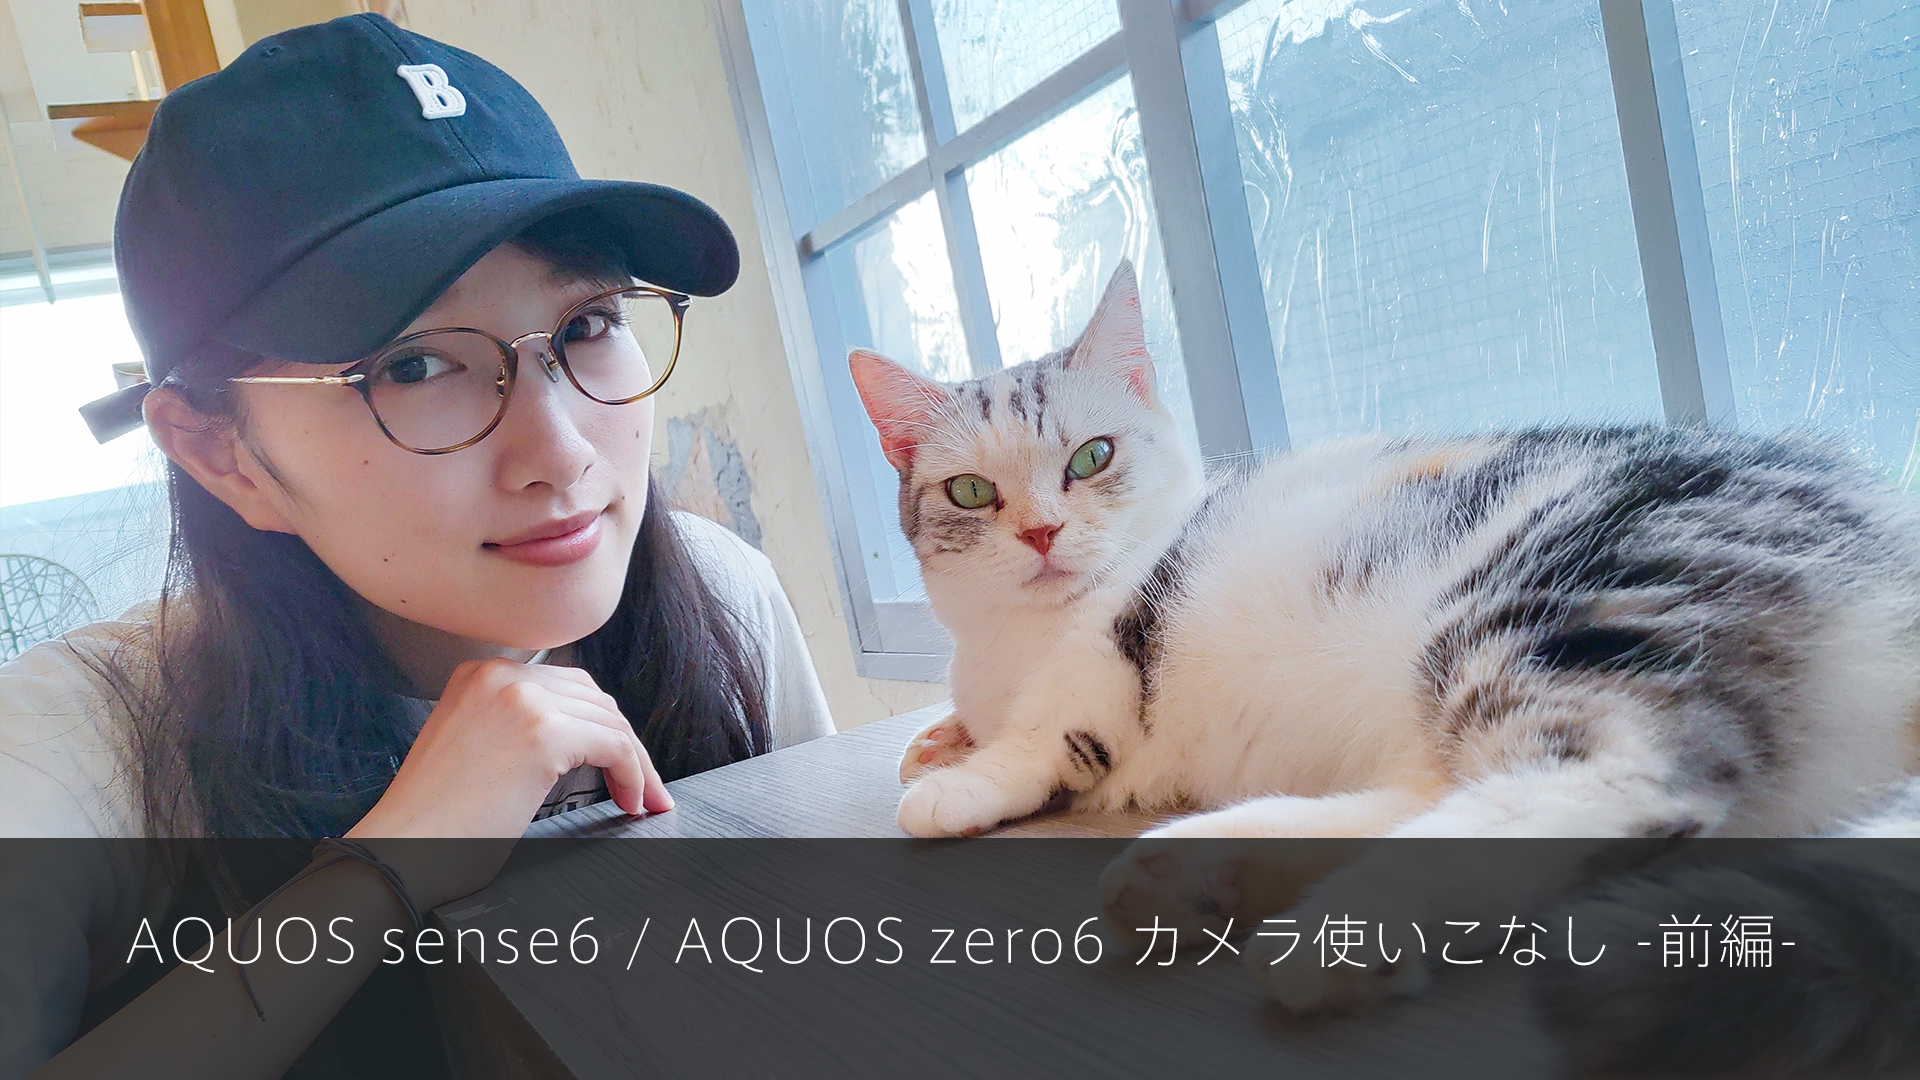 特集記事 AQUOS sense6、AQUOS zero6 カメラ使いこなし前編を更新しました